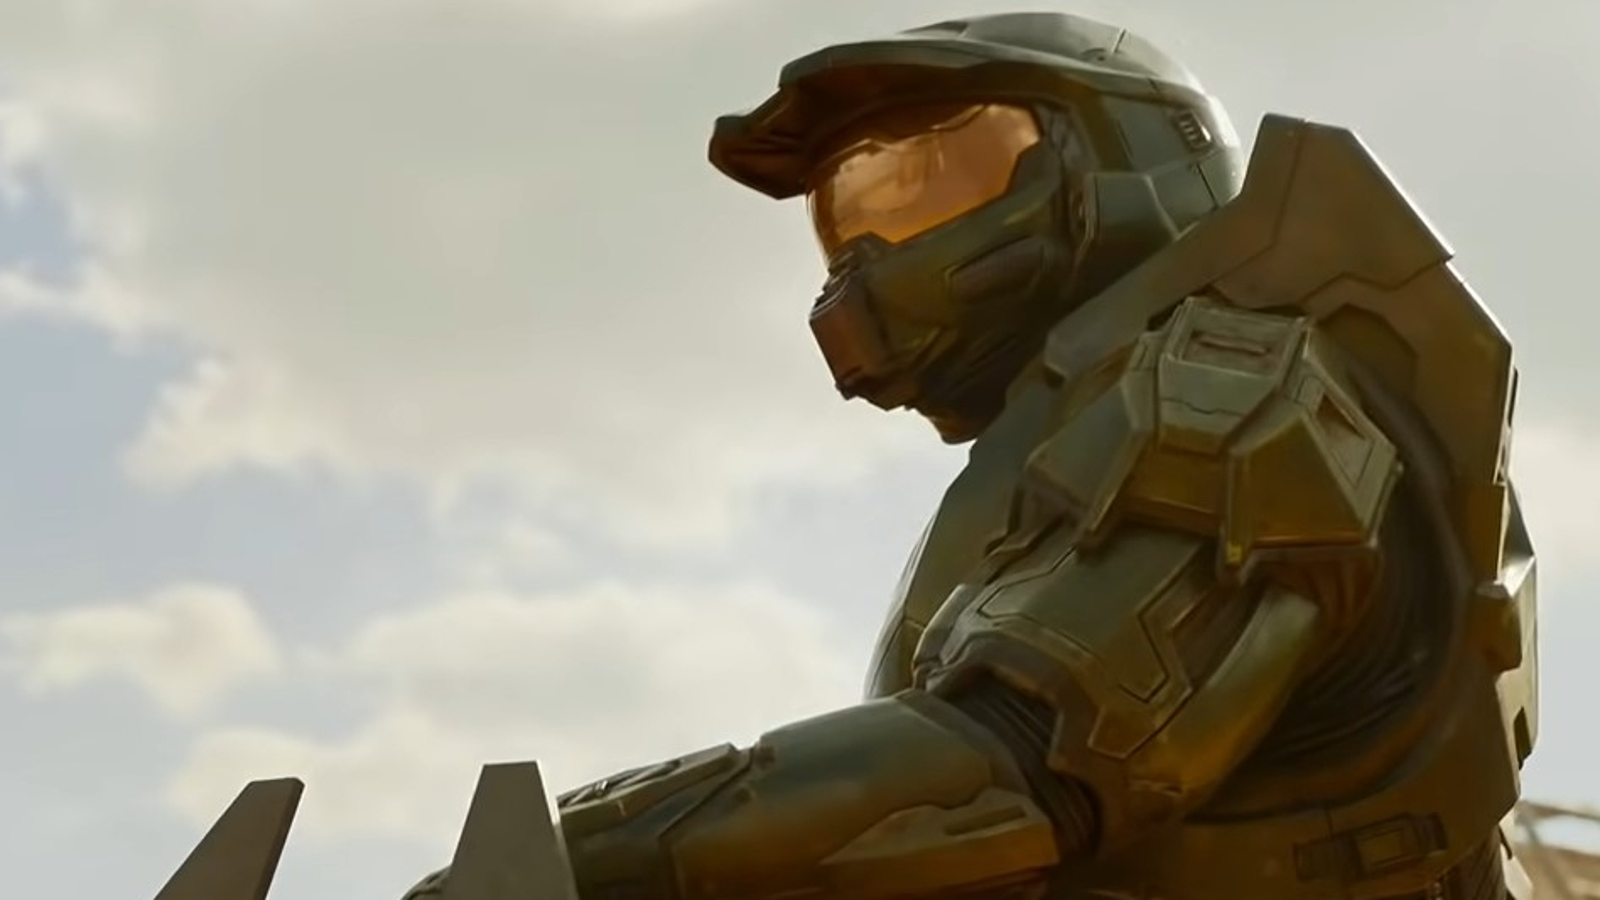 Halo: trailer para a aguardada série